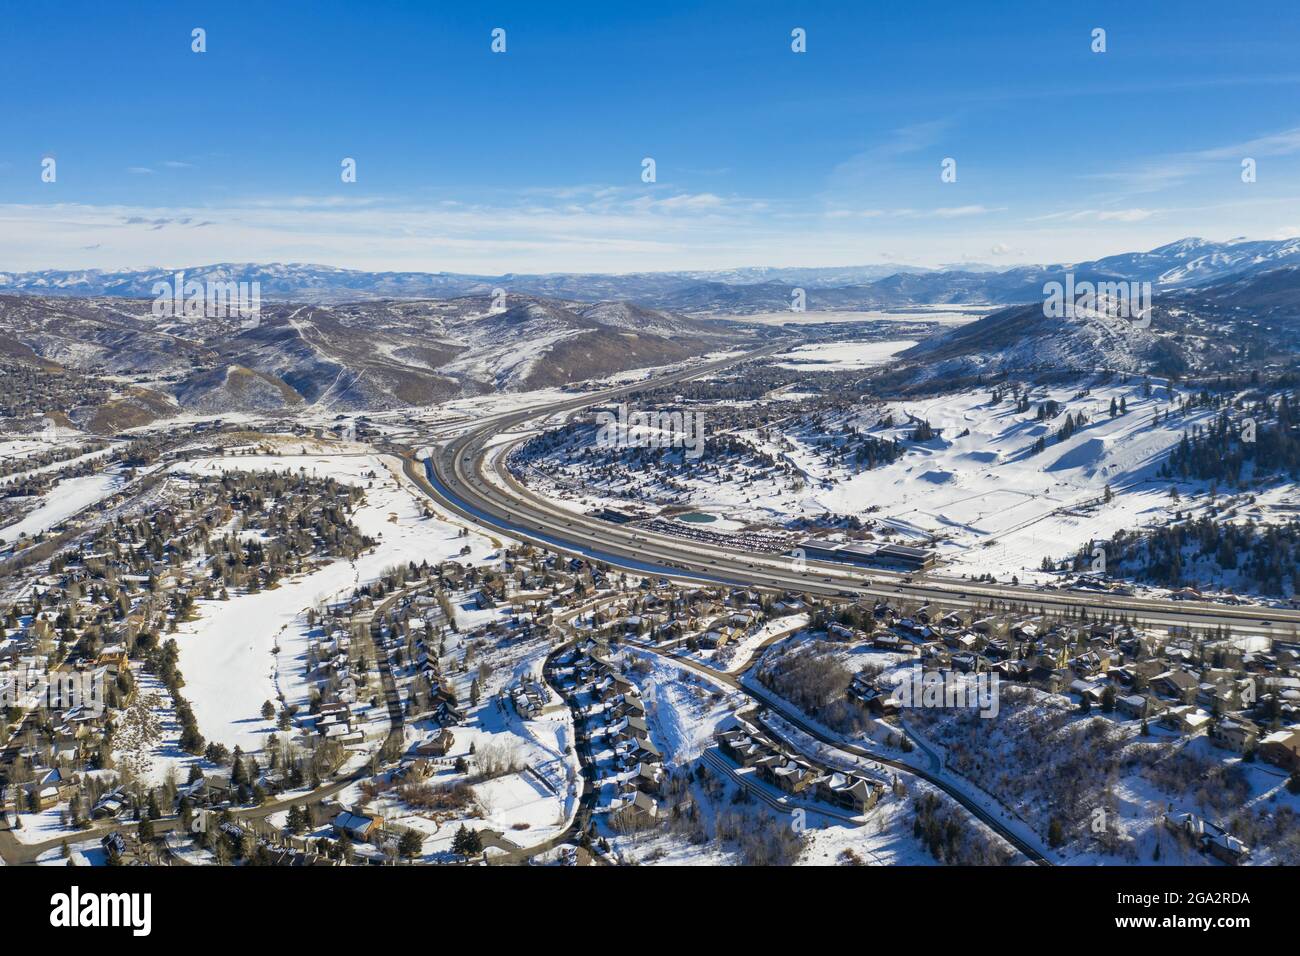 Luftaufnahme über Park City nach einem Winterschnee, berühmt für seine Skigebiete und ; Park City, Summit County, Utah, Vereinigte Staaten von Amerika Stockfoto